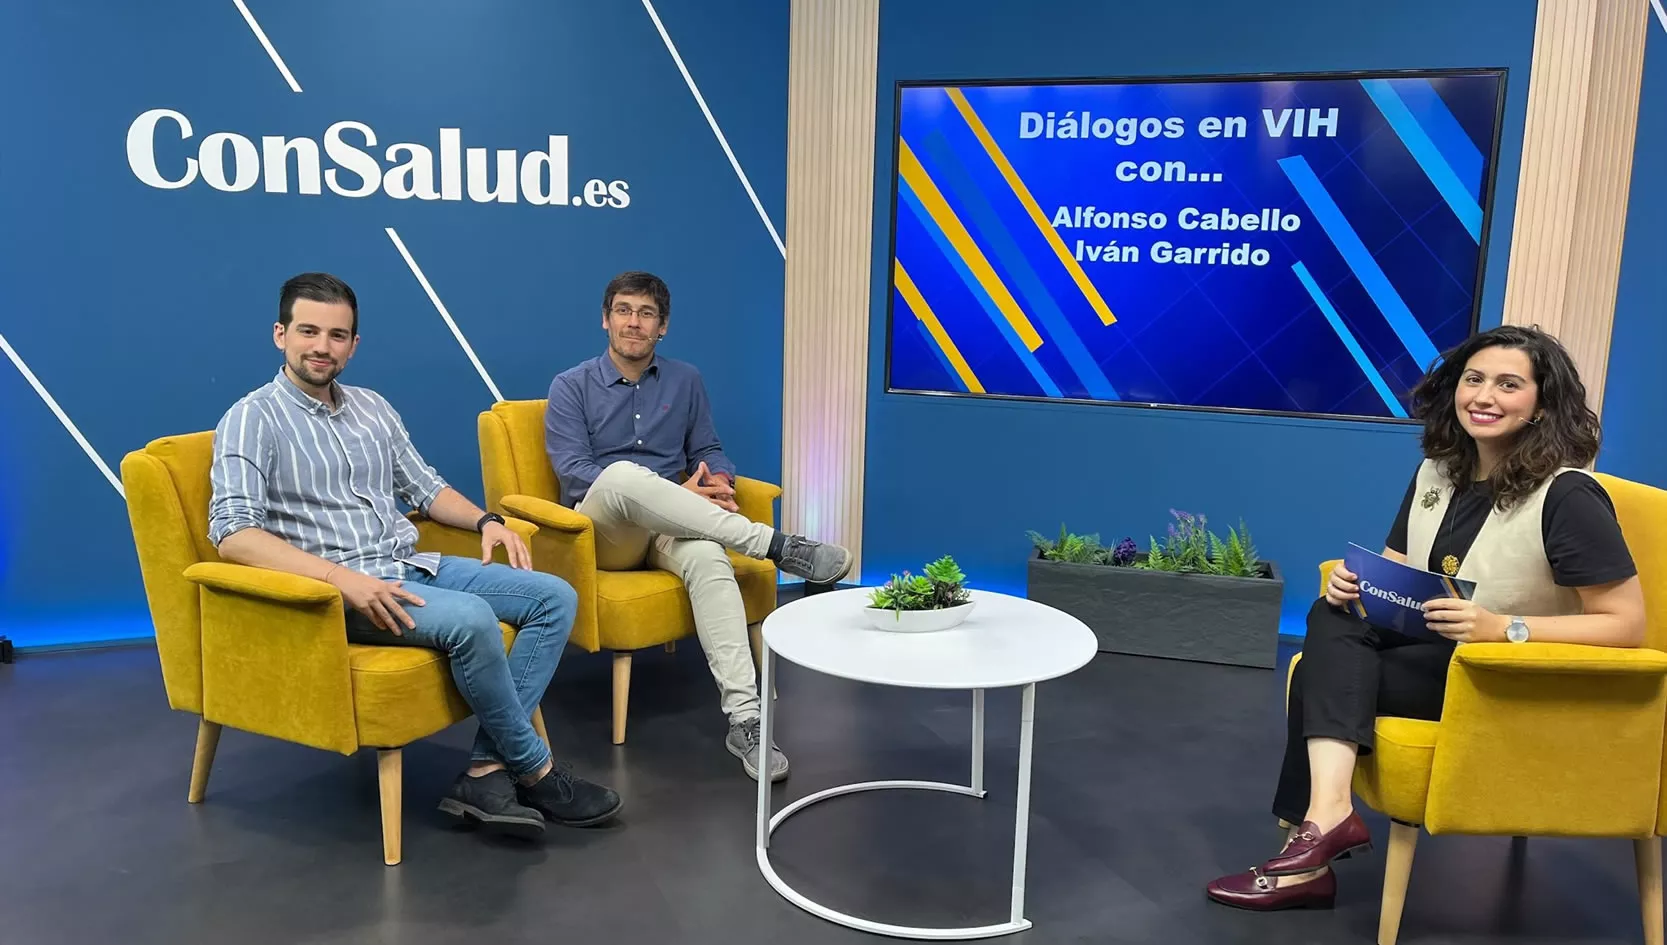 Alfonso Cabello e Iván Garrido protagonizan una nueva edición de 'Diálogos en VIH'